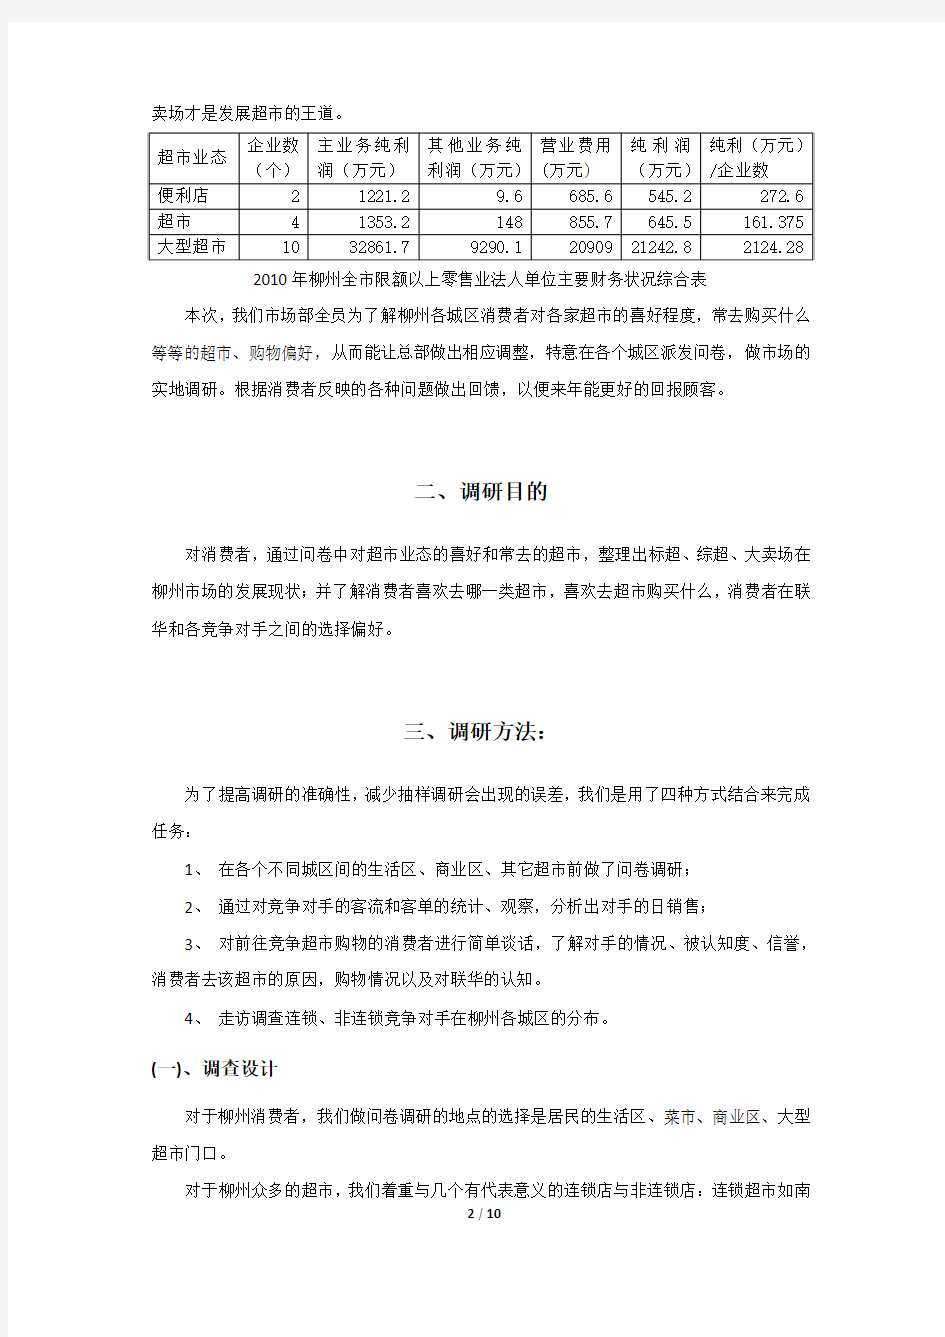 2112柳州城区消费市场分析报告